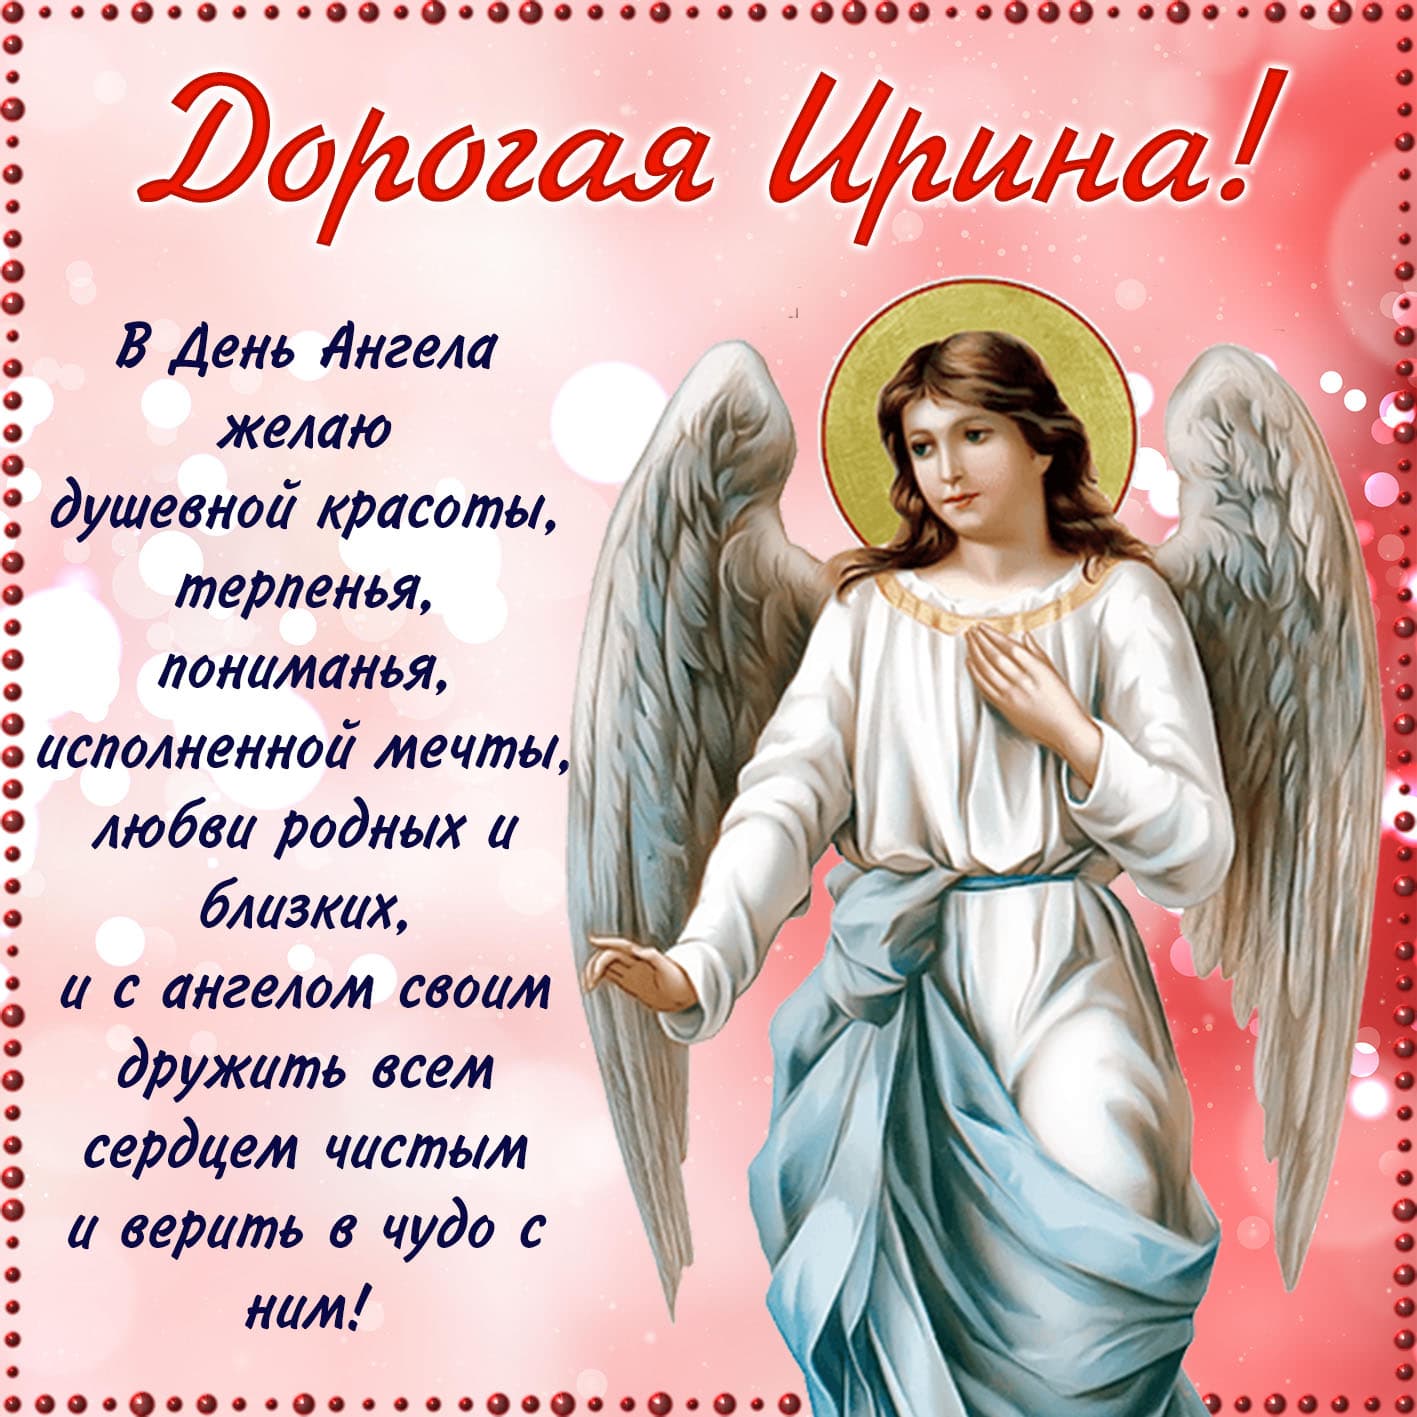 Православная открытка дорогой ирине на день ангела